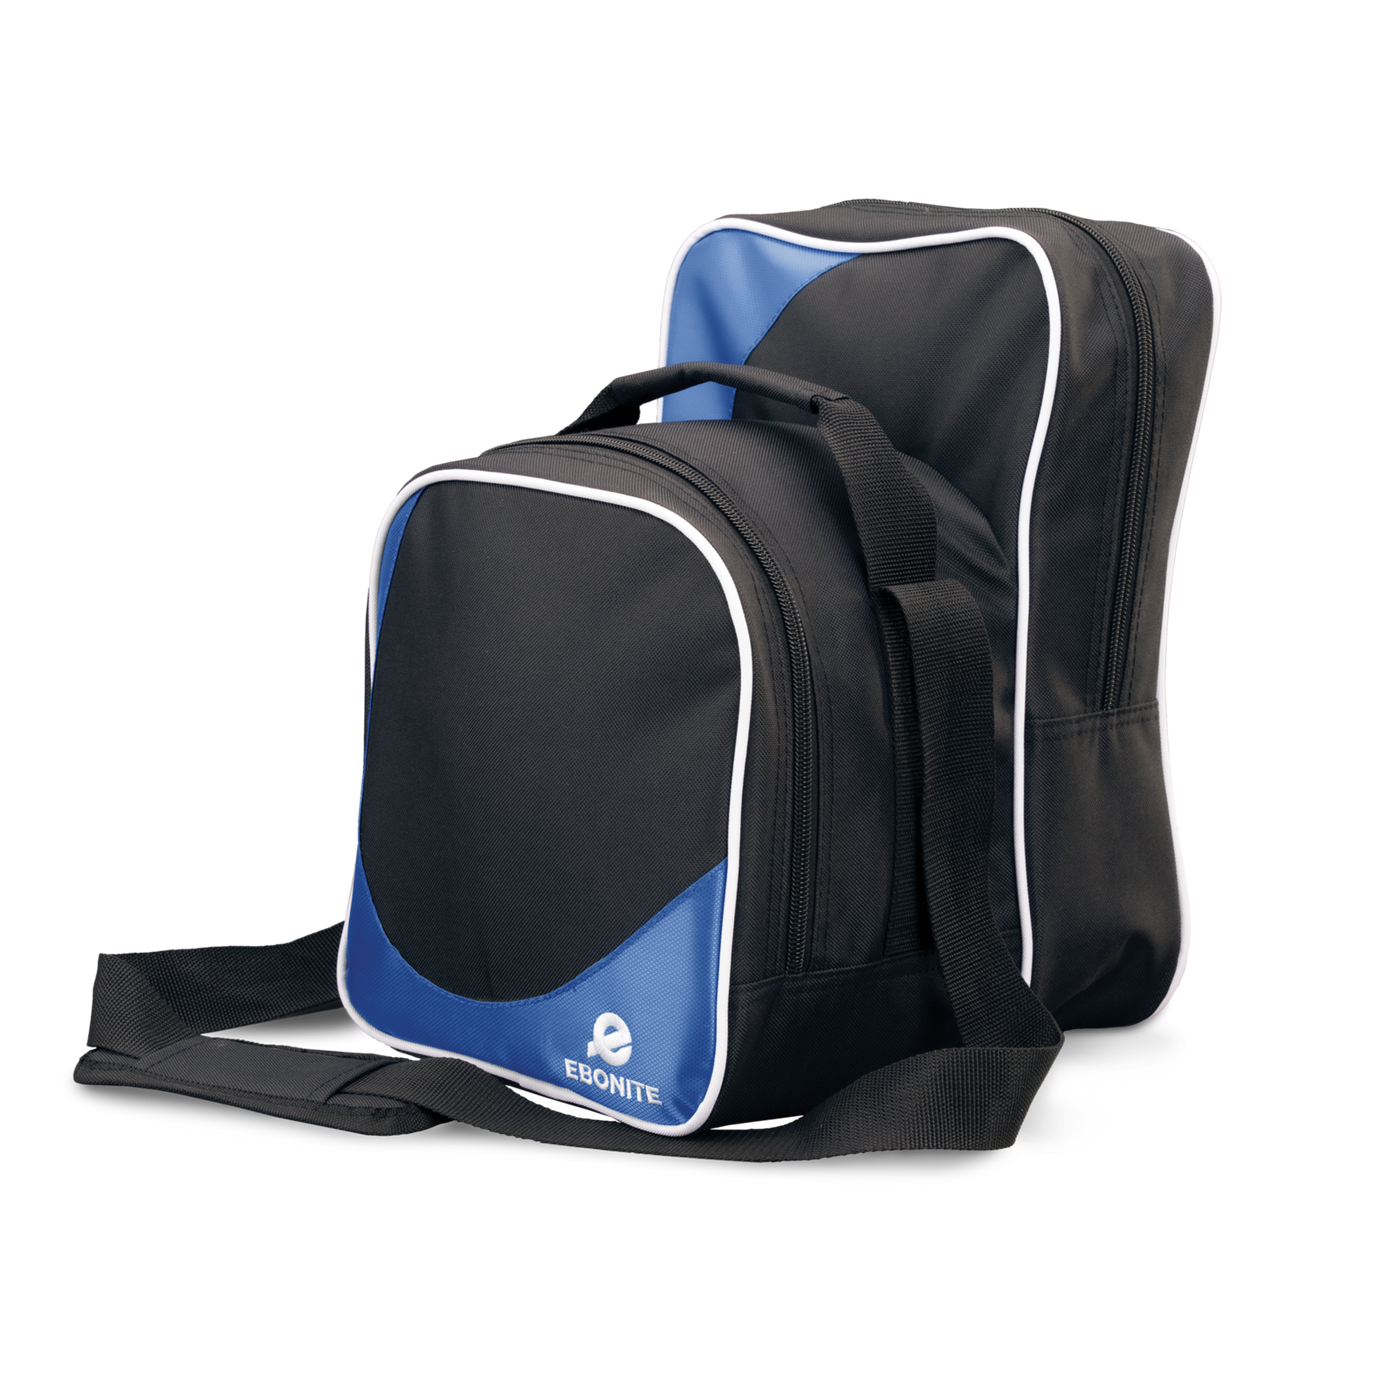 Ebonite Compact Shoulder Bag in Blue